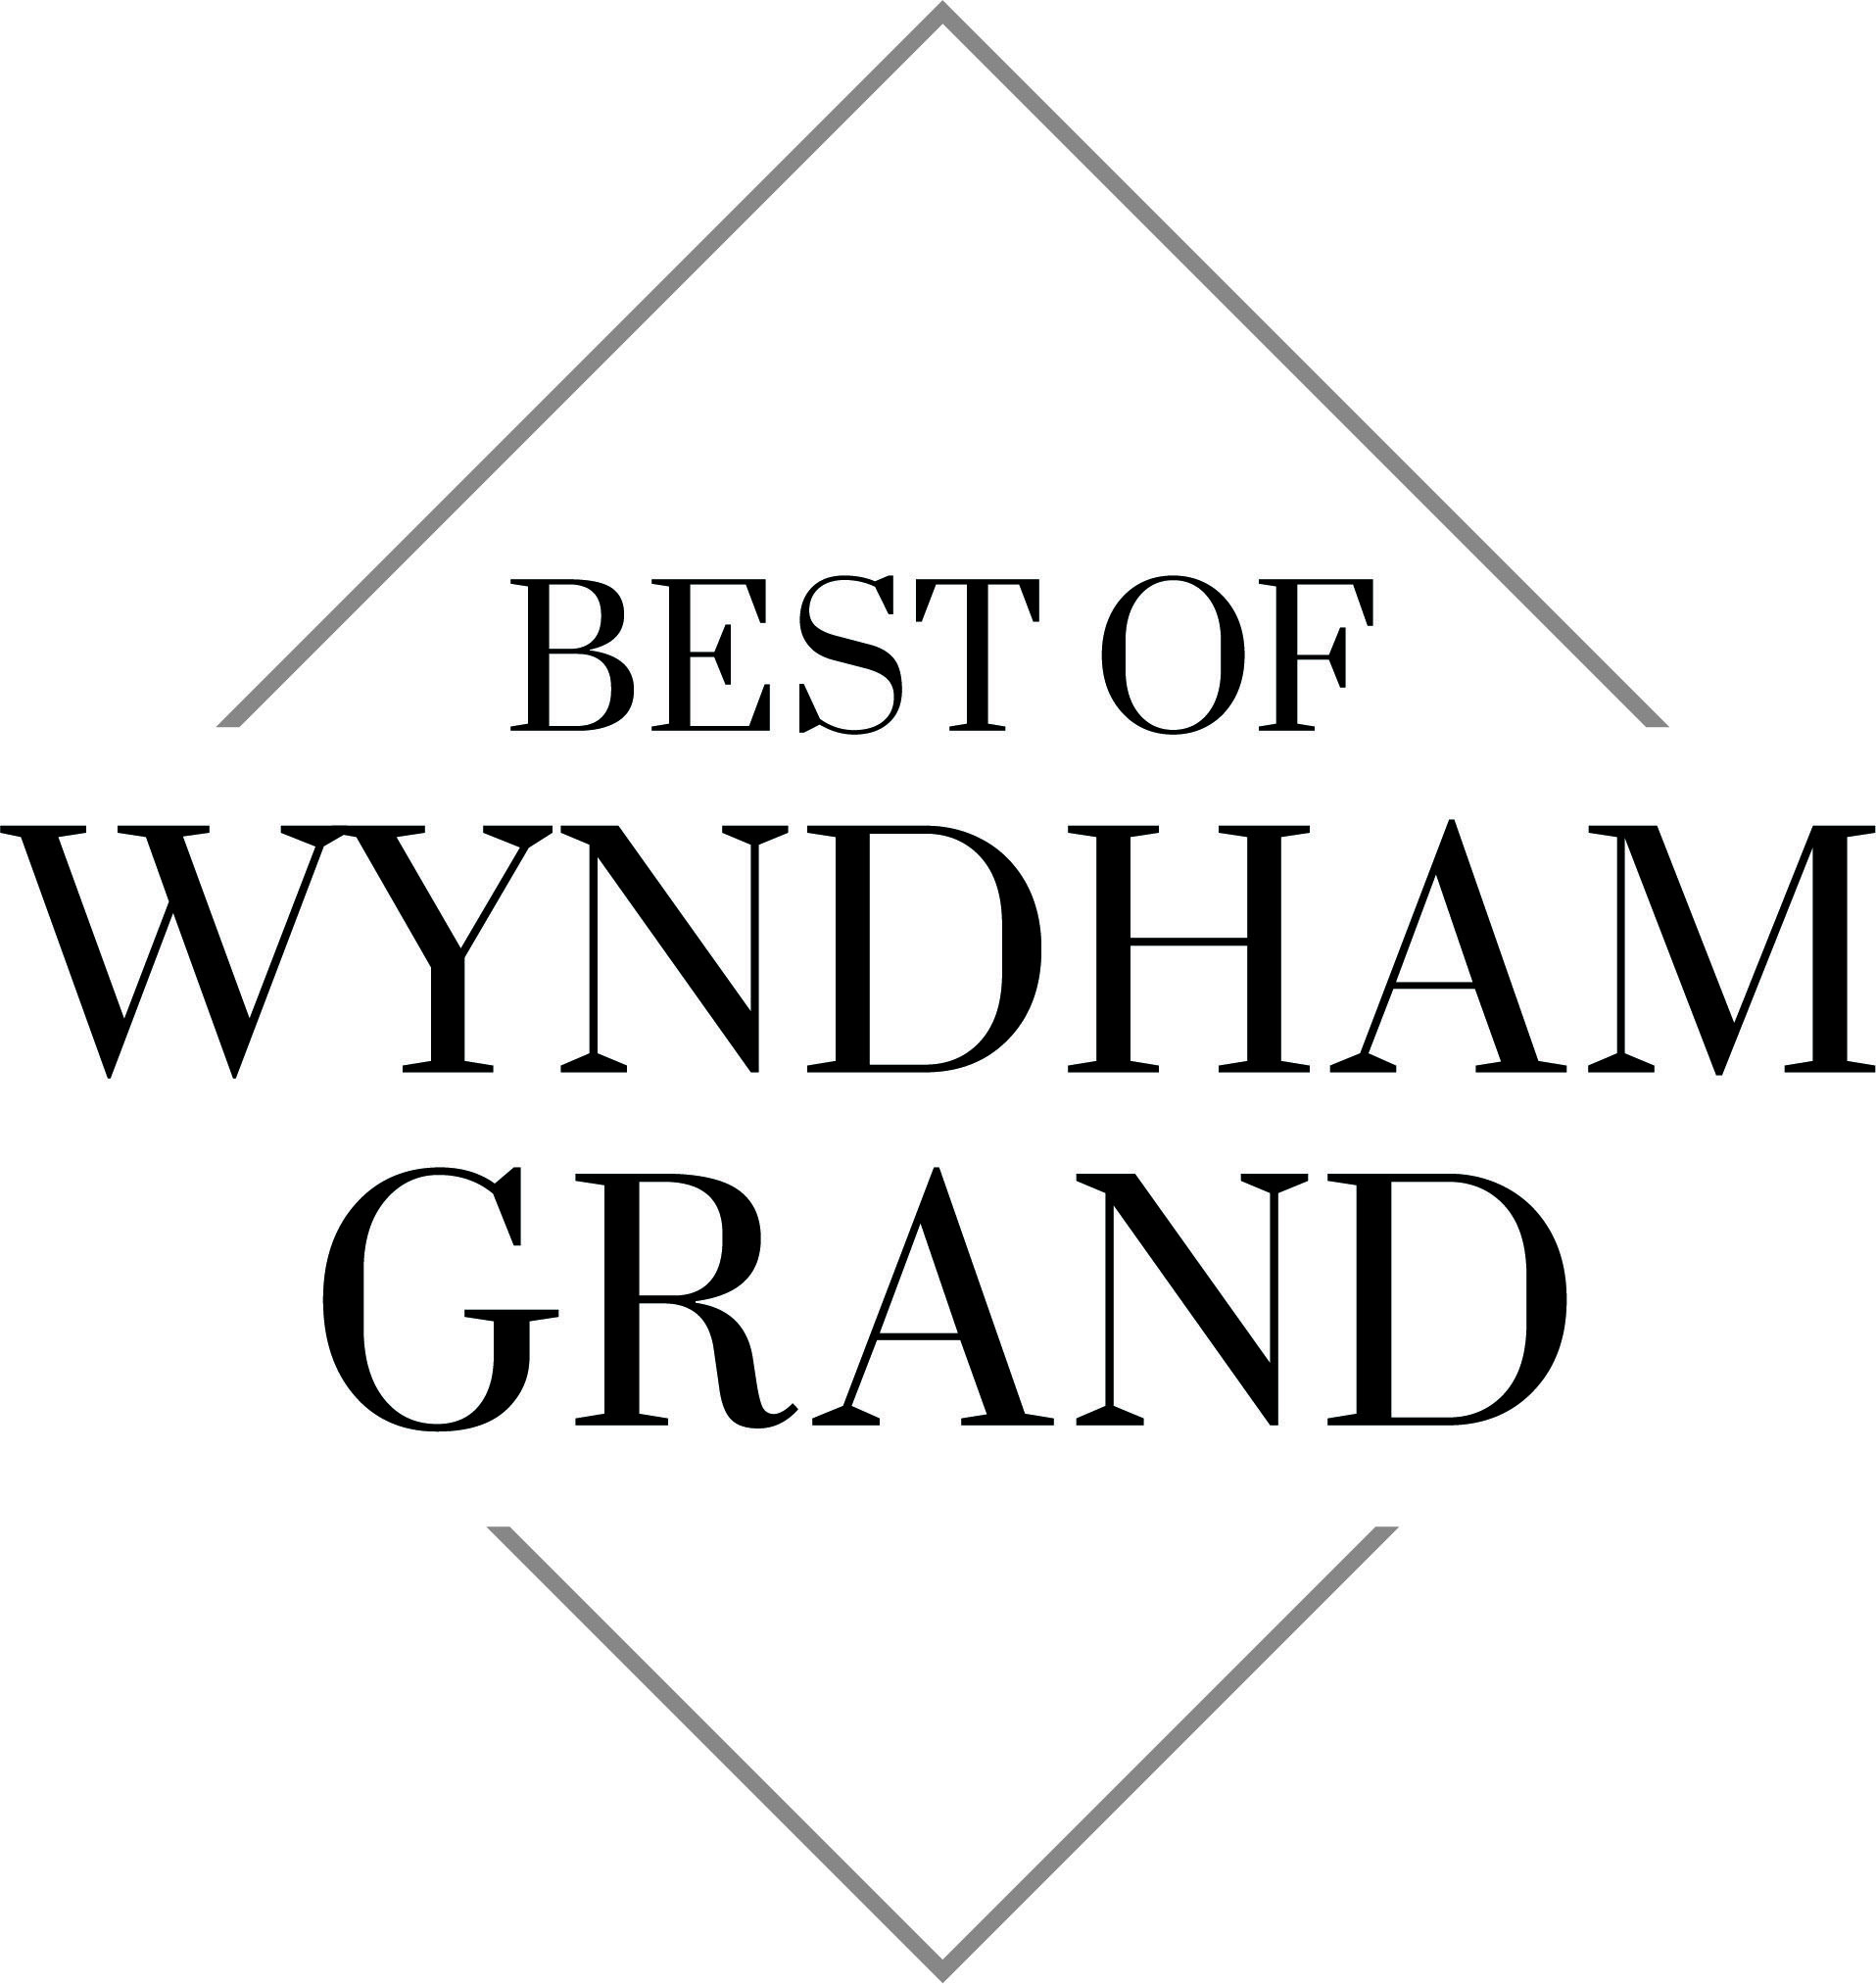 Best of wyndham